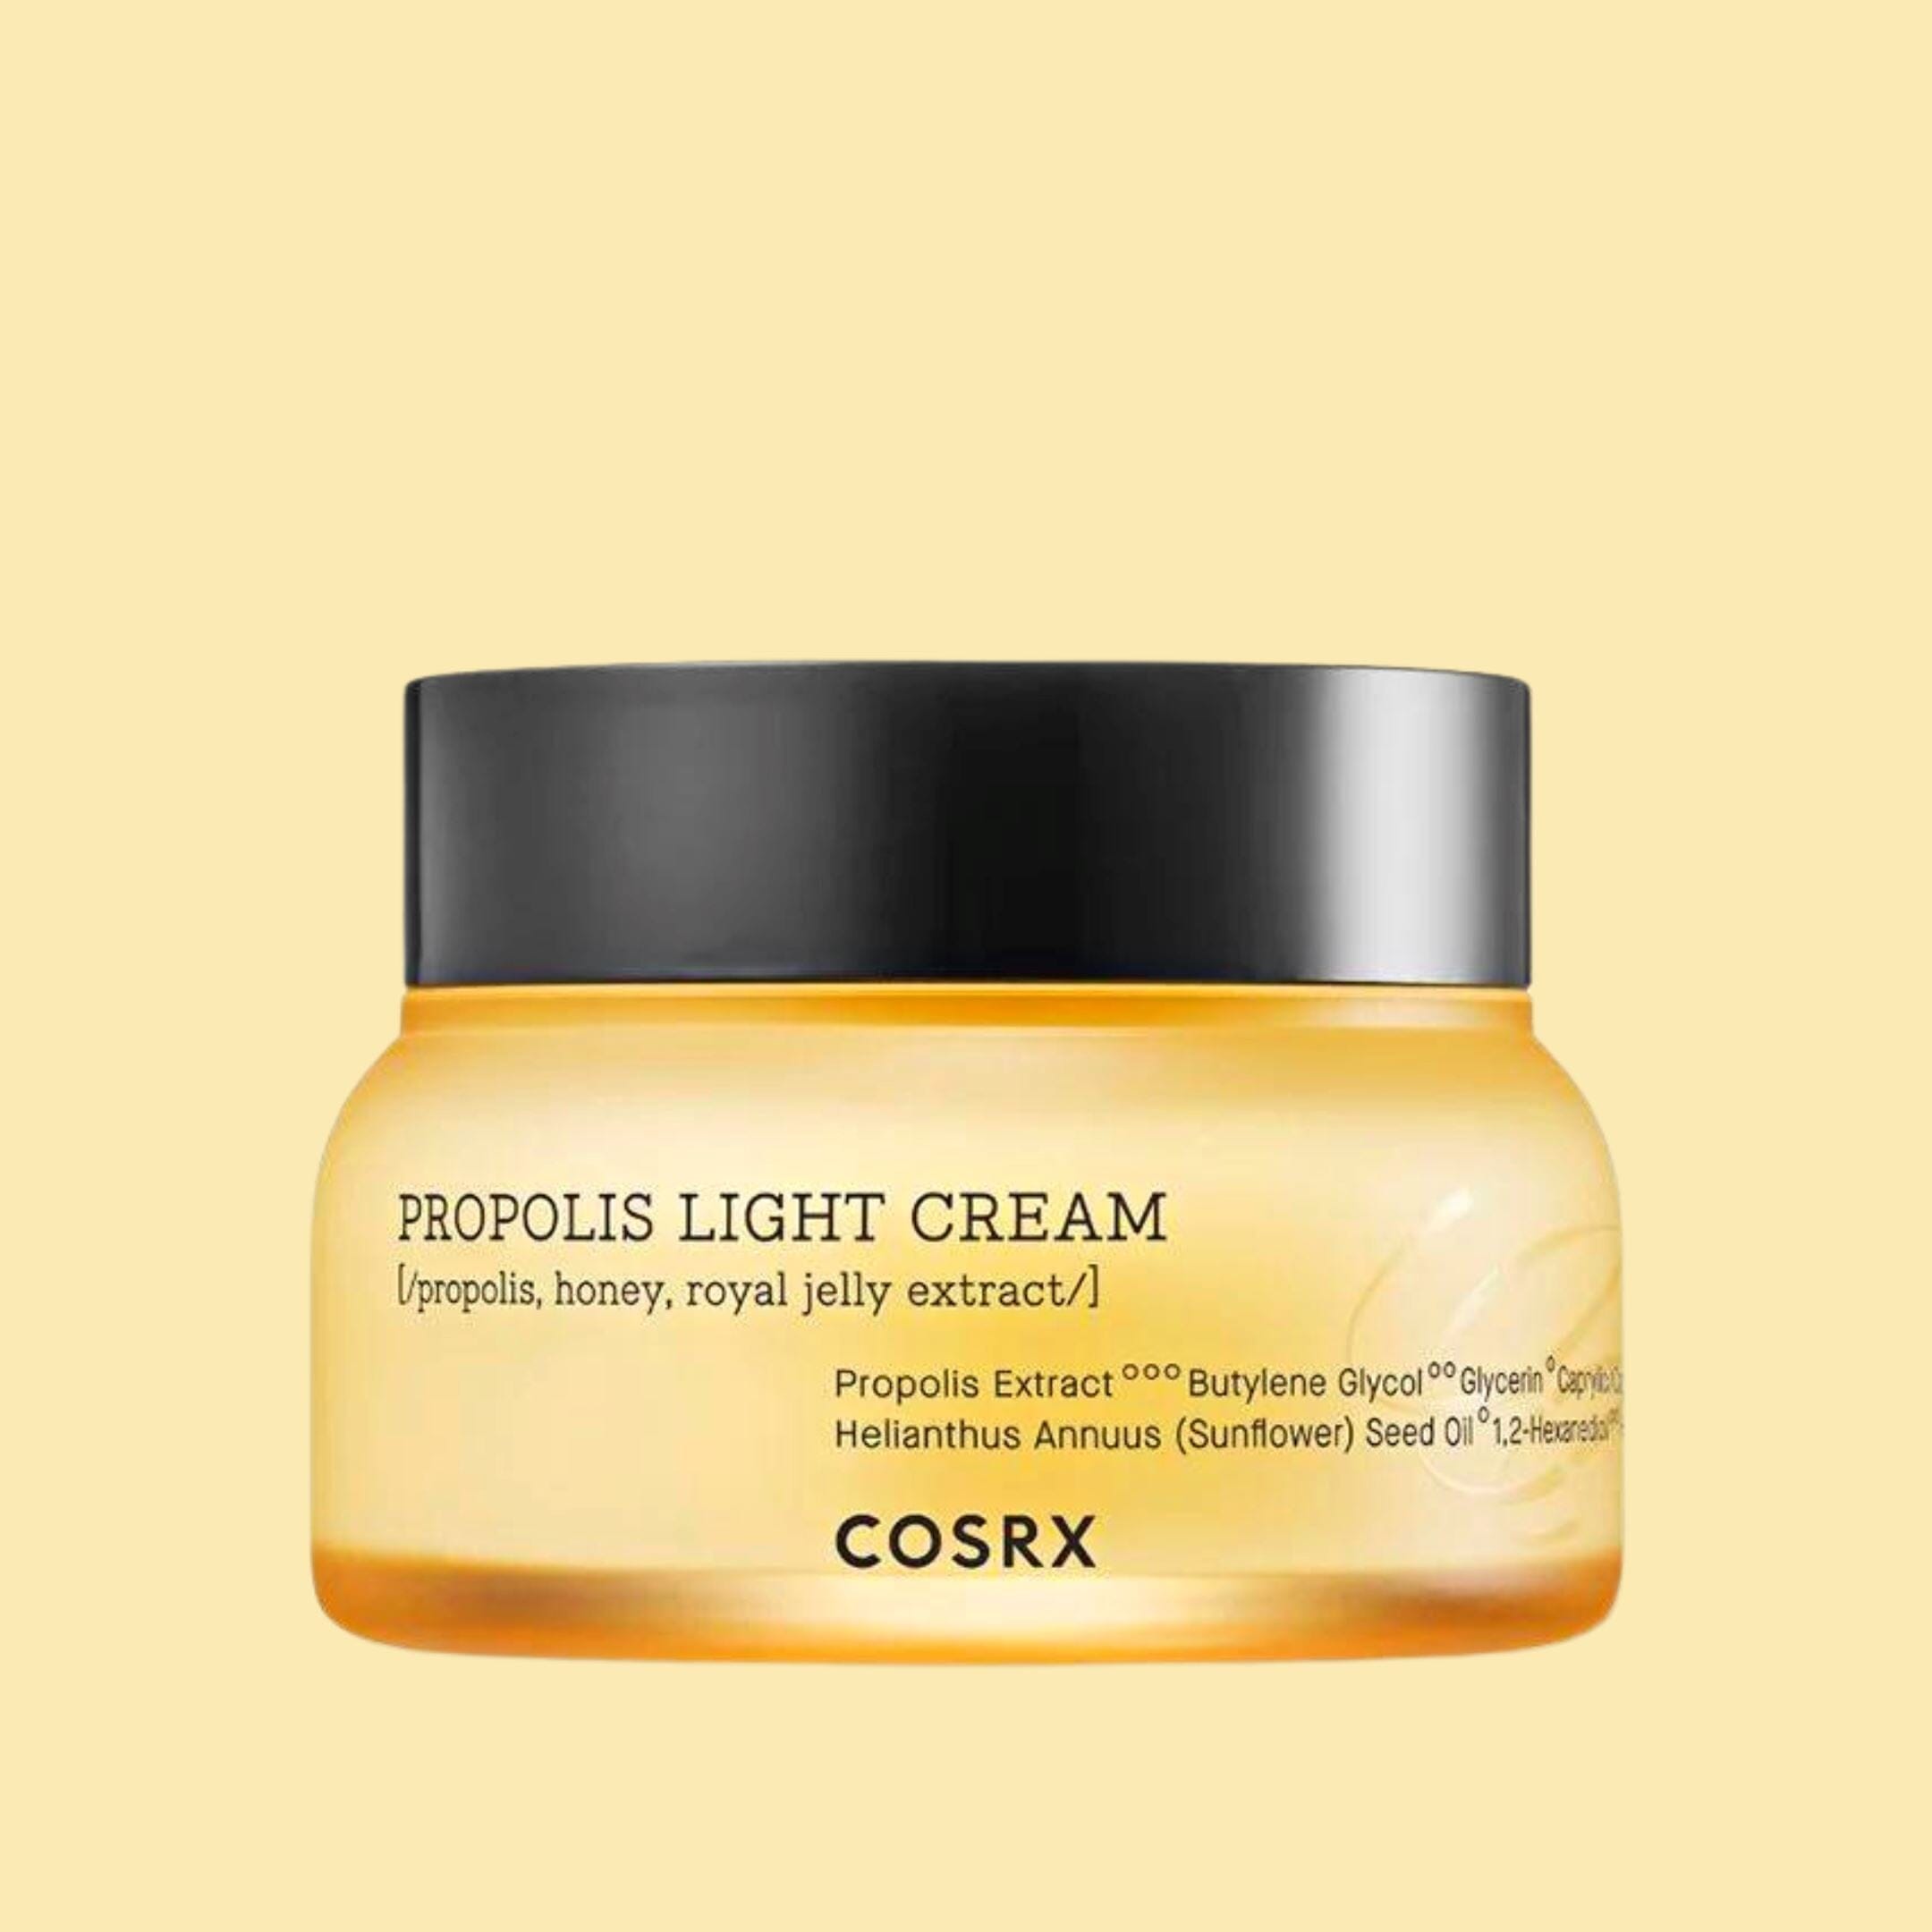 COSRX Full Fit Propolis Light Cream ( Pouch Sample ) Skin Care COSRX ORION XO Sri Lanka